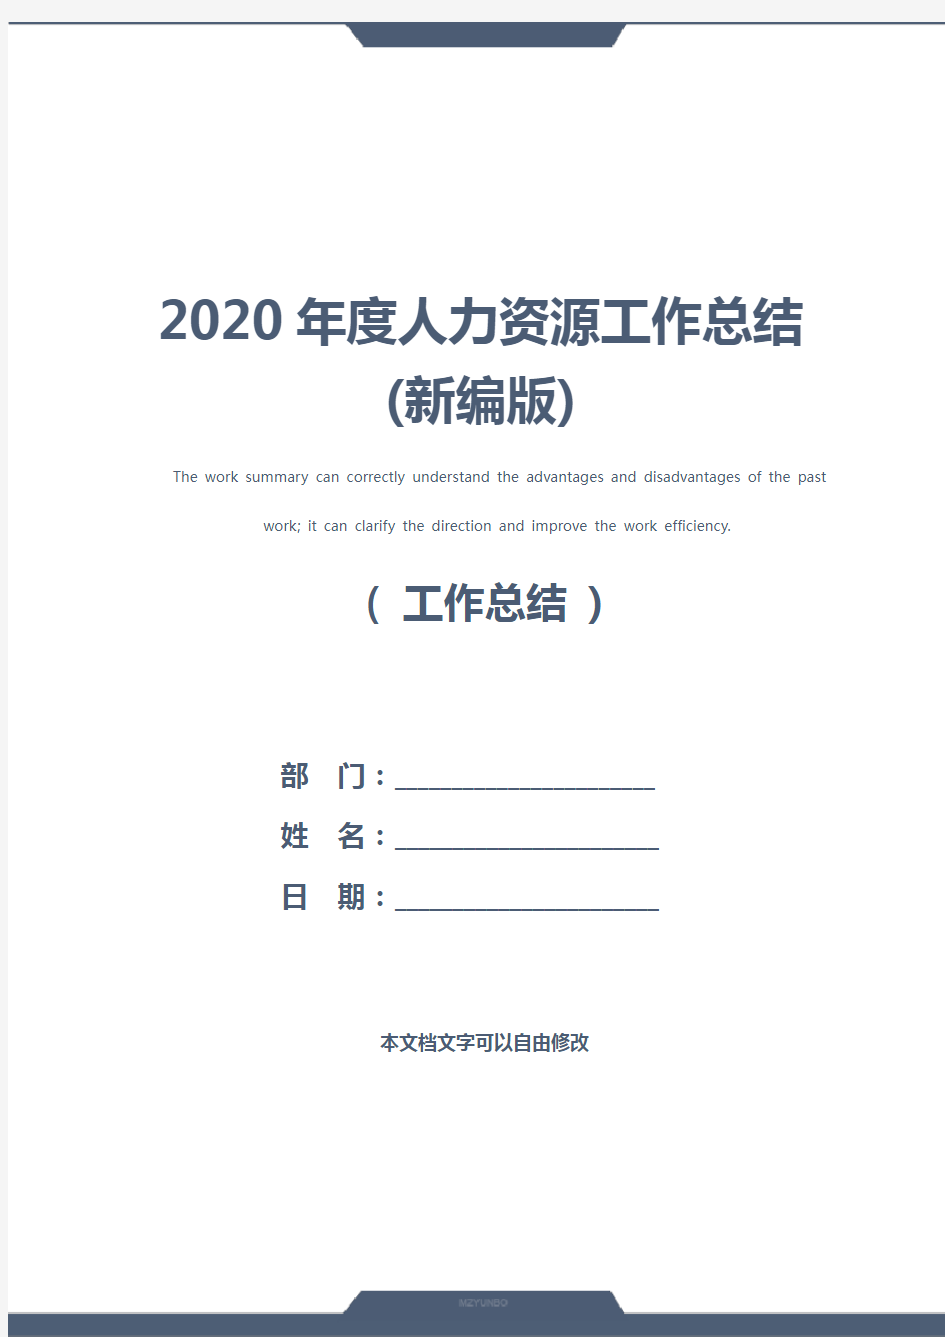 2020年度人力资源工作总结(新编版)